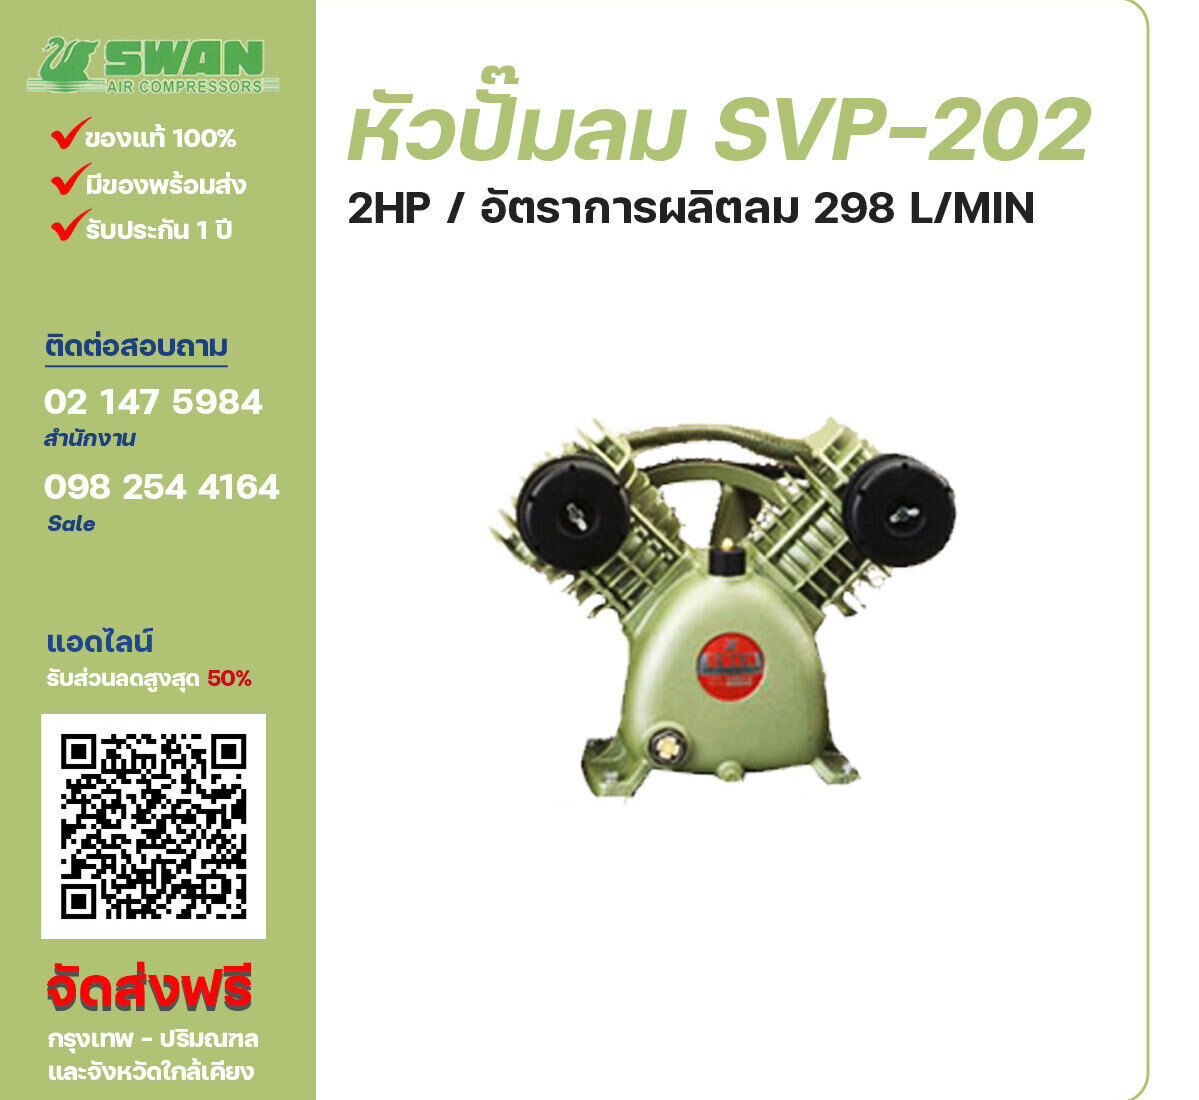 จำหน่ายหัวปั๊มลมสวอน ของแท้ 100% SWAN Bare Compressor รุ่น SVP-202 ขนาด 2 แรงม้า อัตราการผลิตลม 225 ลิตร / นาที รับประกัน 3 เดือน ตามเงื่อนไขของบริษัทฯ จัดส่งฟรี กรุงเทพ-ปริมณฑล